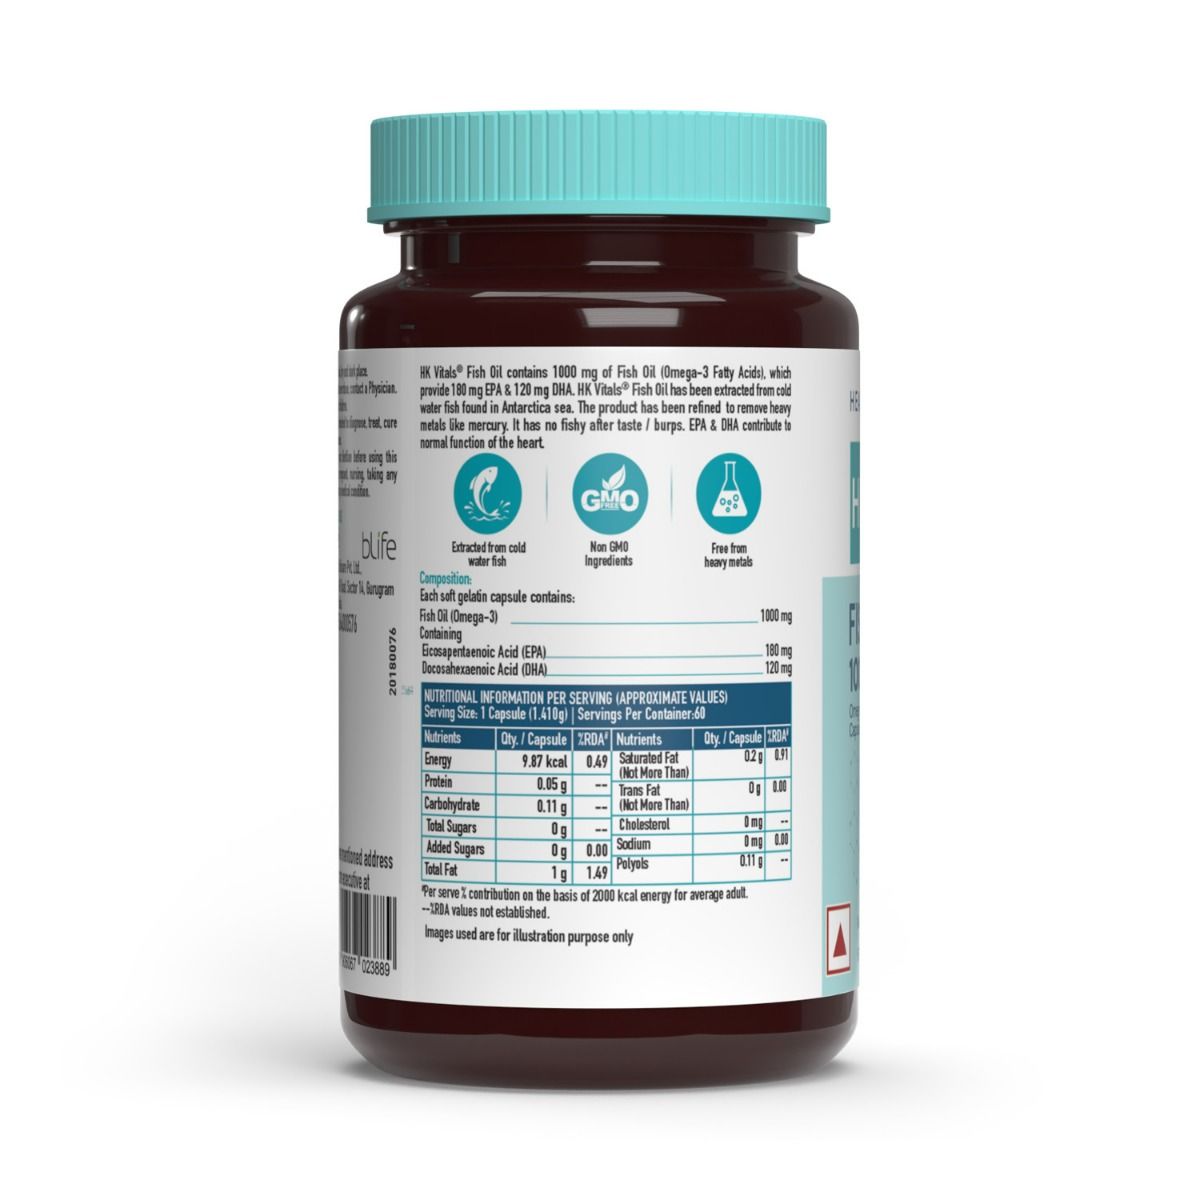 HealthKart HK Vitals Fish Oil 1000 mg, 60 Soft Gelatin Capsules, Pack of 1 